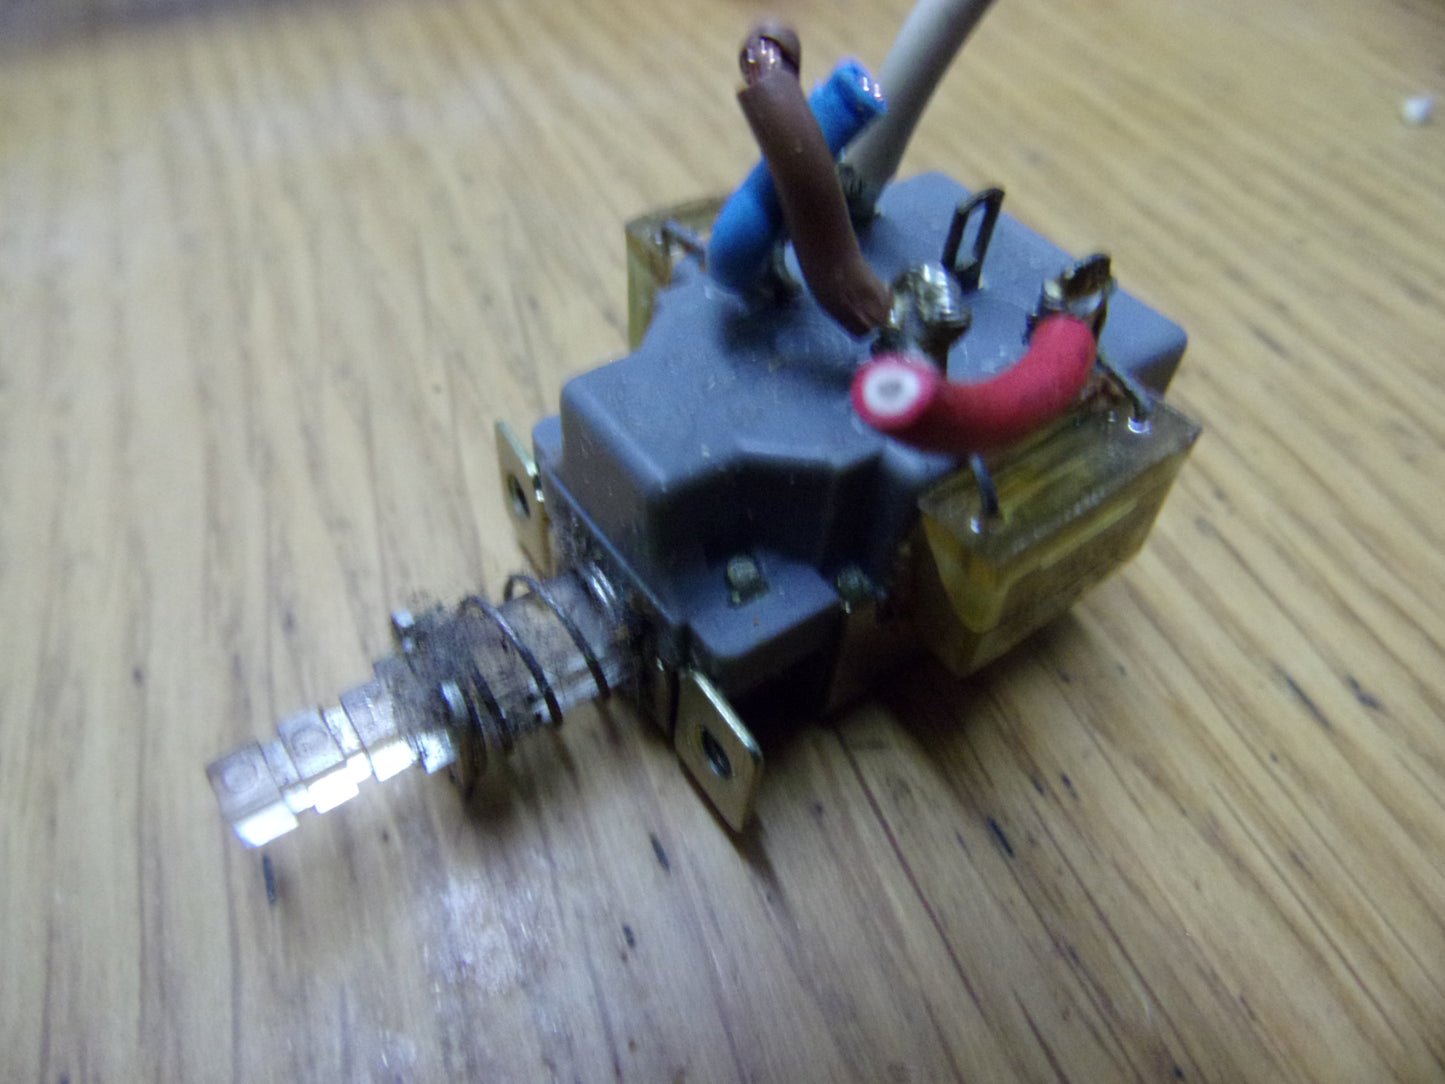 Tascam 144 portastudio power switch